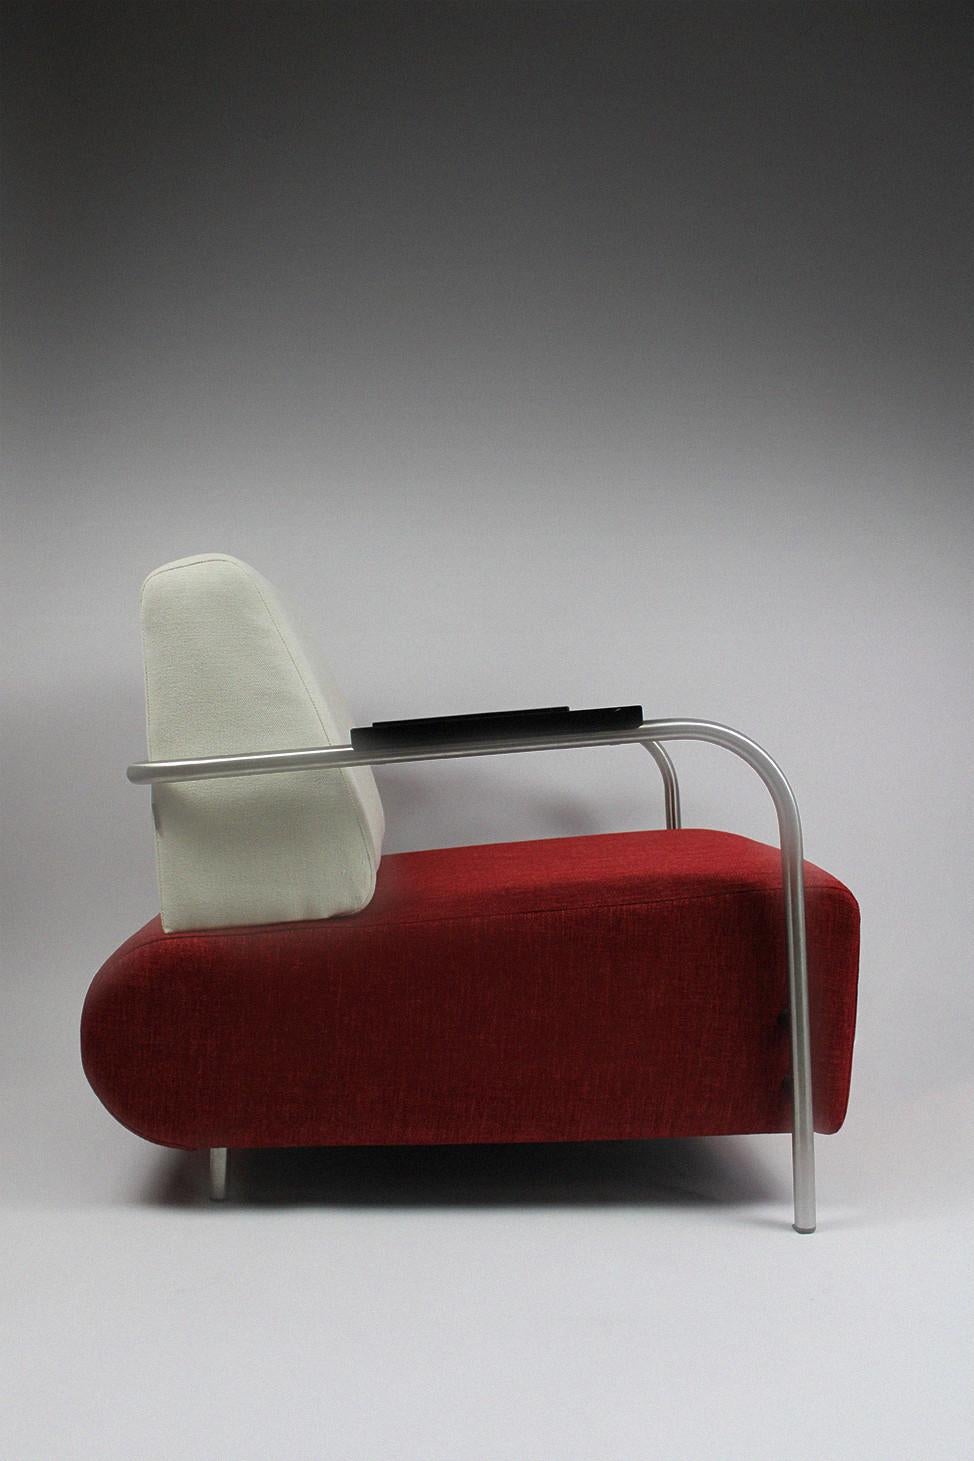 Diese innovativen Loungesessel von Jamé, einer anerkannten niederländischen Möbelfirma, die für ihre Form- und Stilstärke bekannt ist, haben sie als Marke enorm nach vorne gebracht, was sie mit ihren modernen Anwendungen sofort erreicht haben. Diese